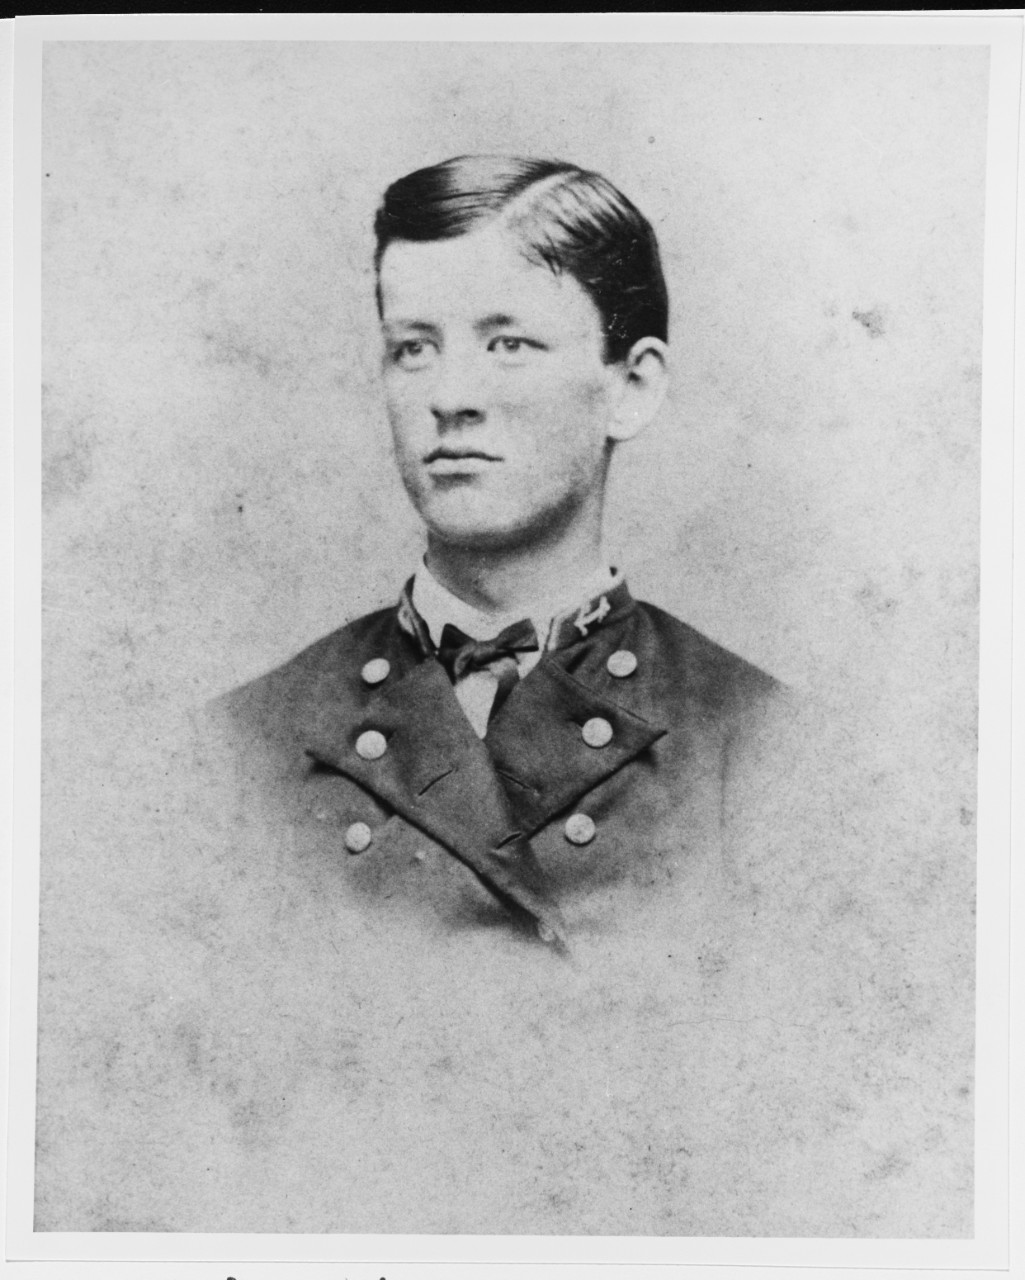 Midshipman William T. Dutton, USN